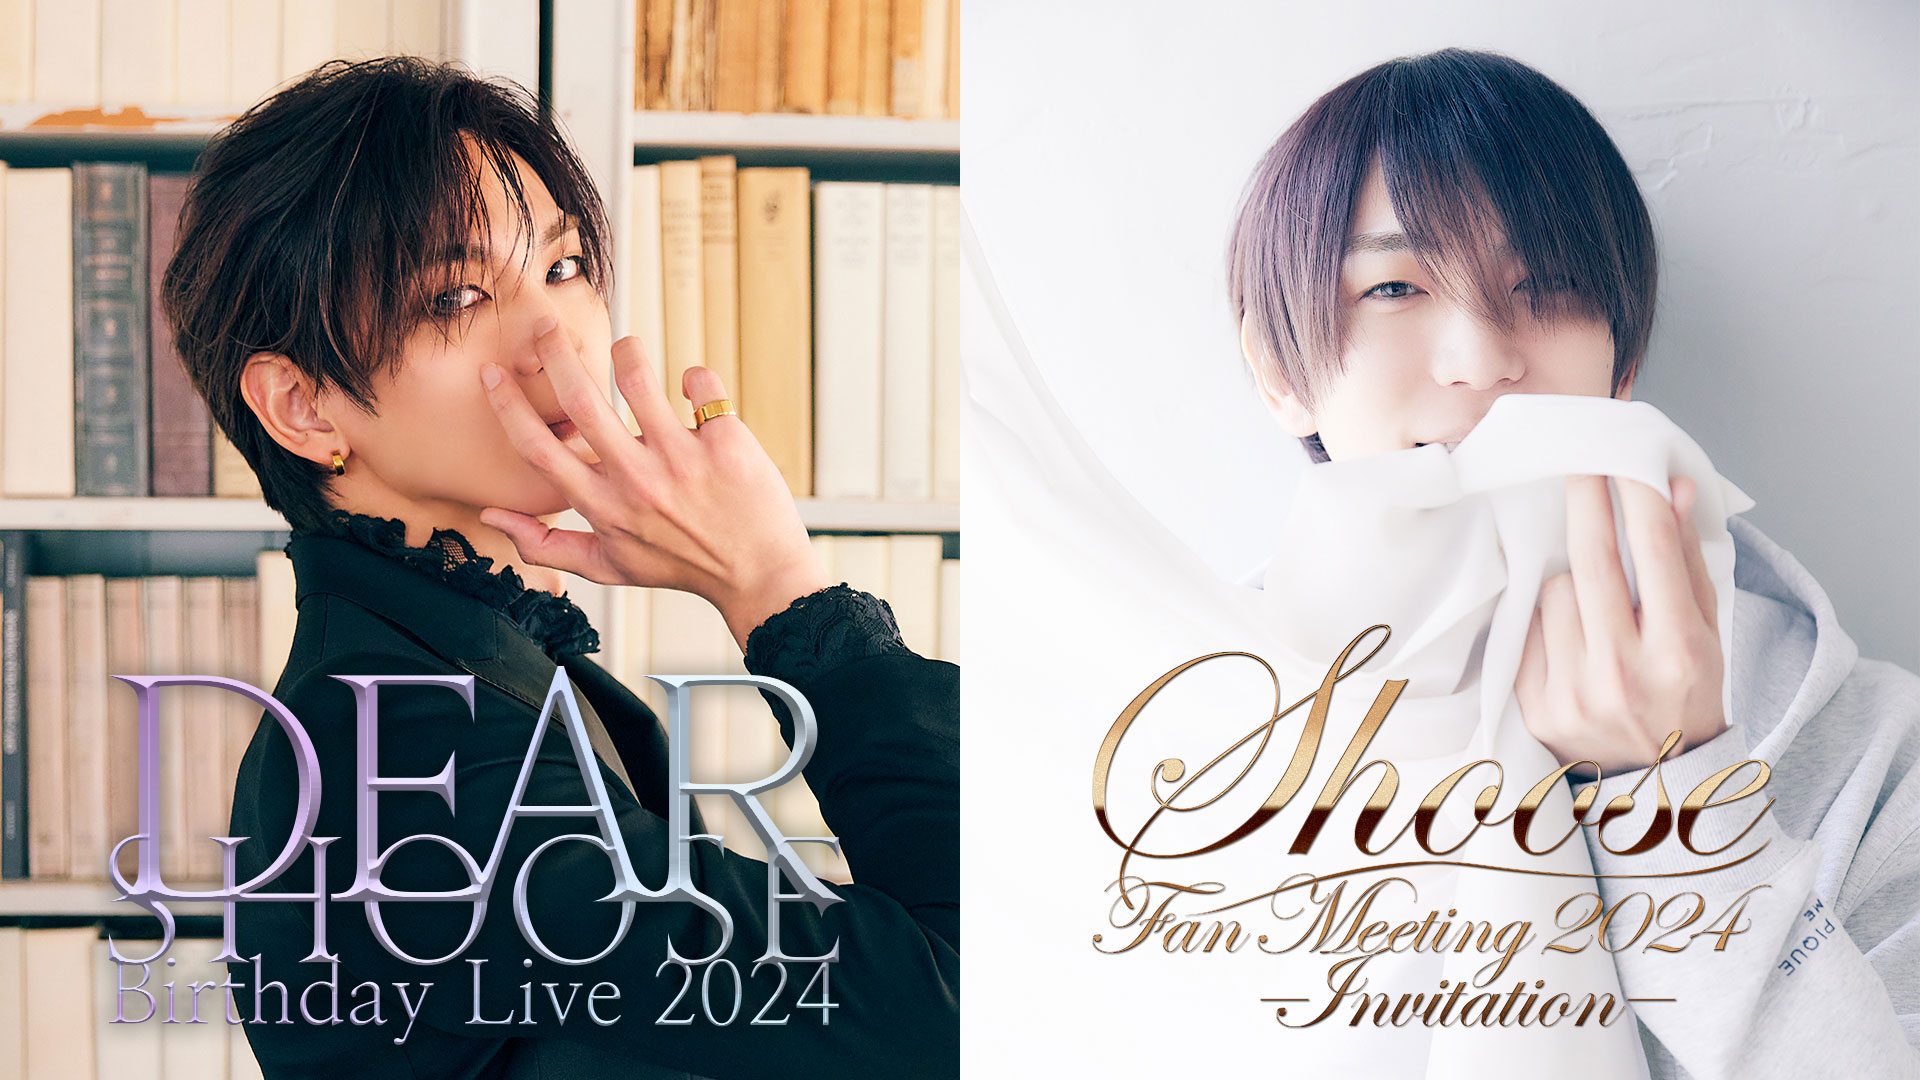 GOODS INFORMATION | Shoos Birthday Live 2024 “DEAR” | Shoos Fan 